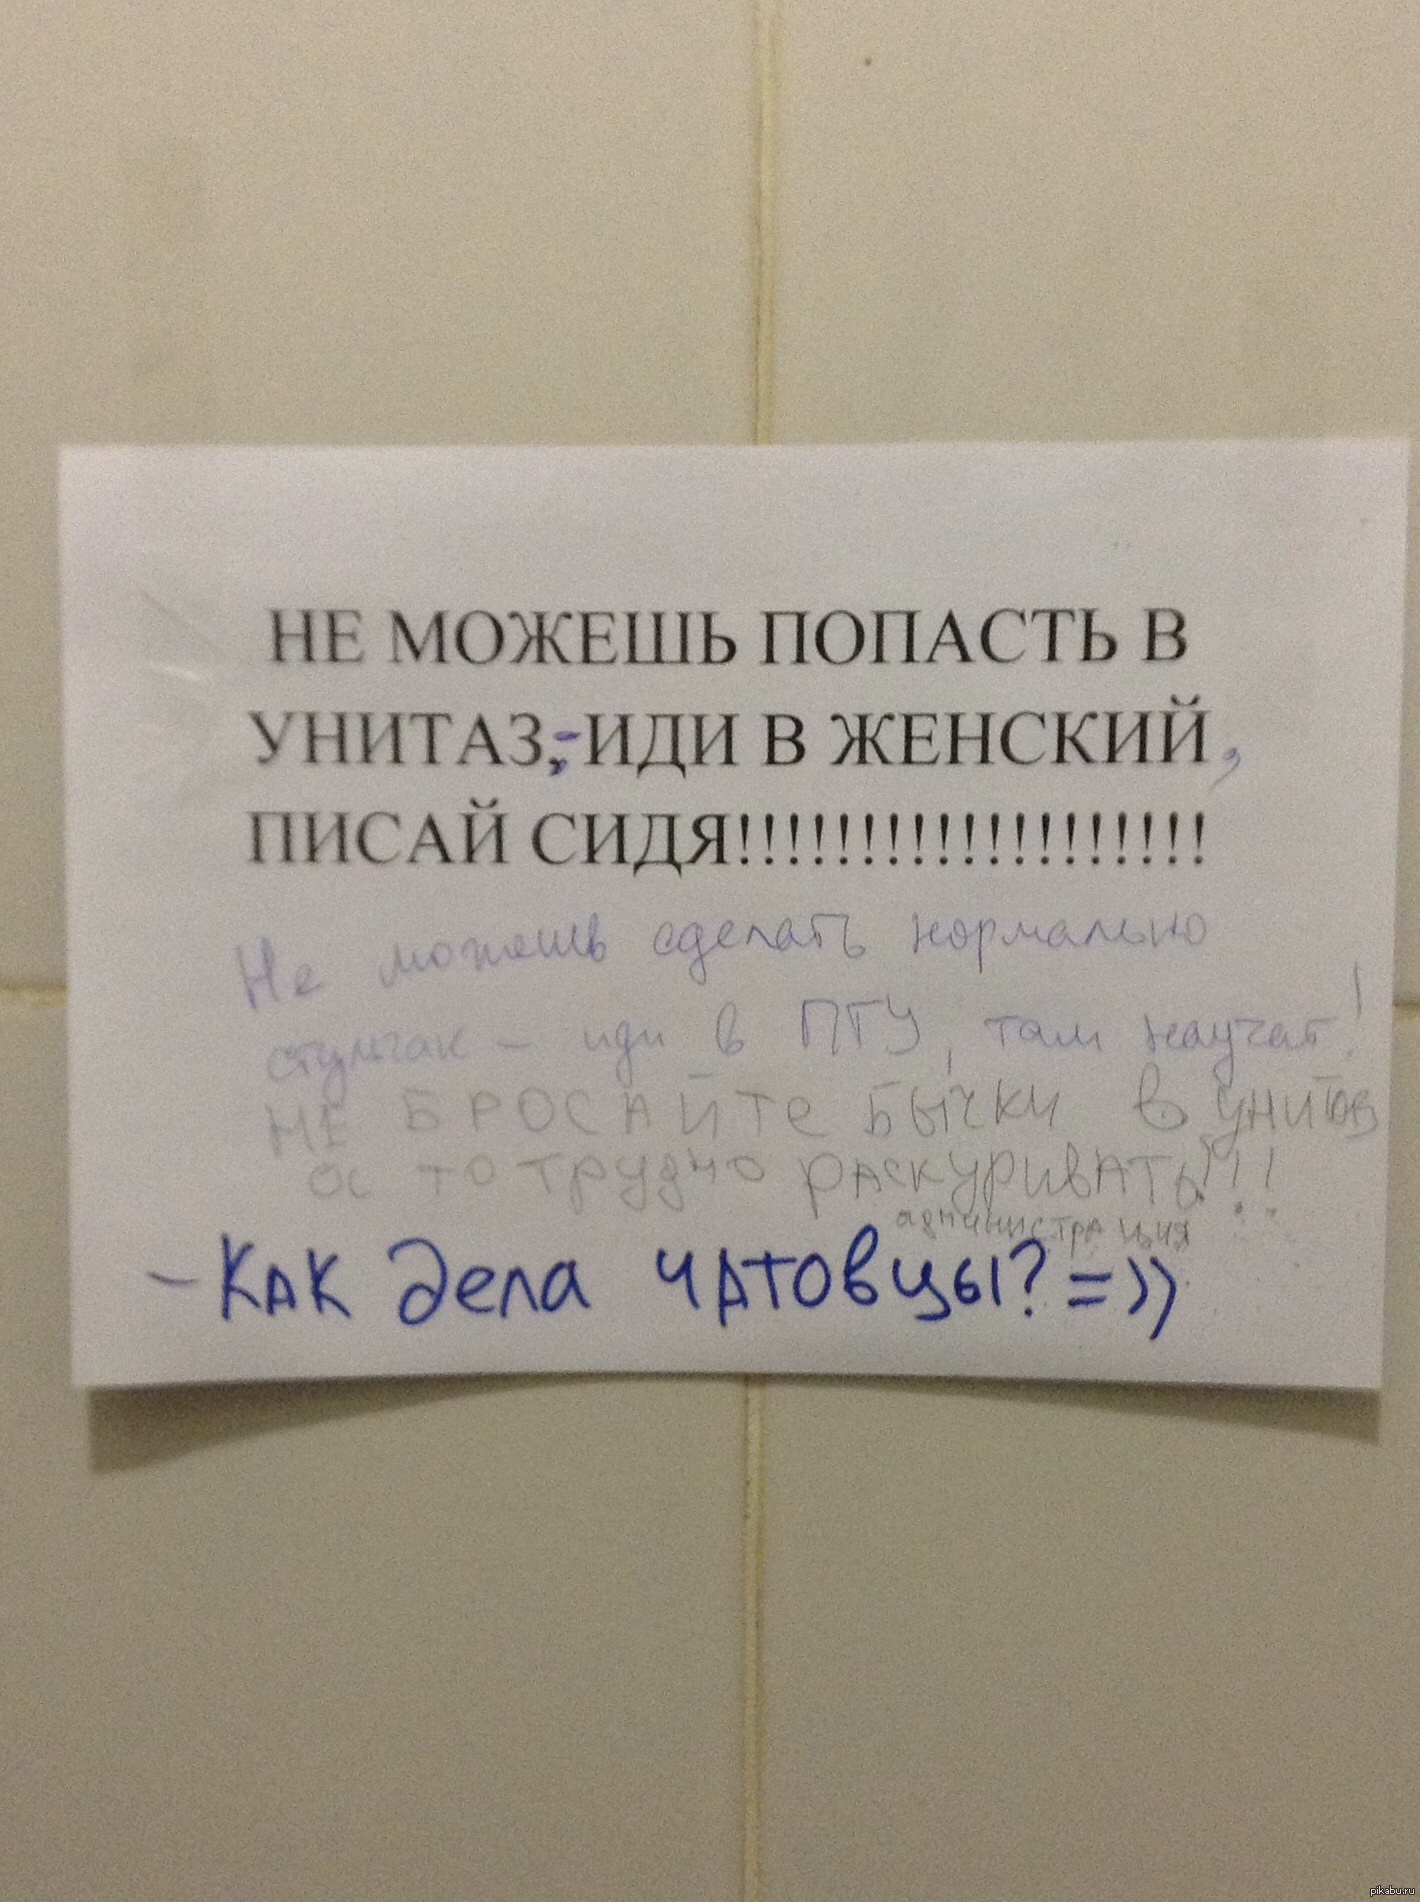 Тактаров рассказал про драки в туалете ПТУ